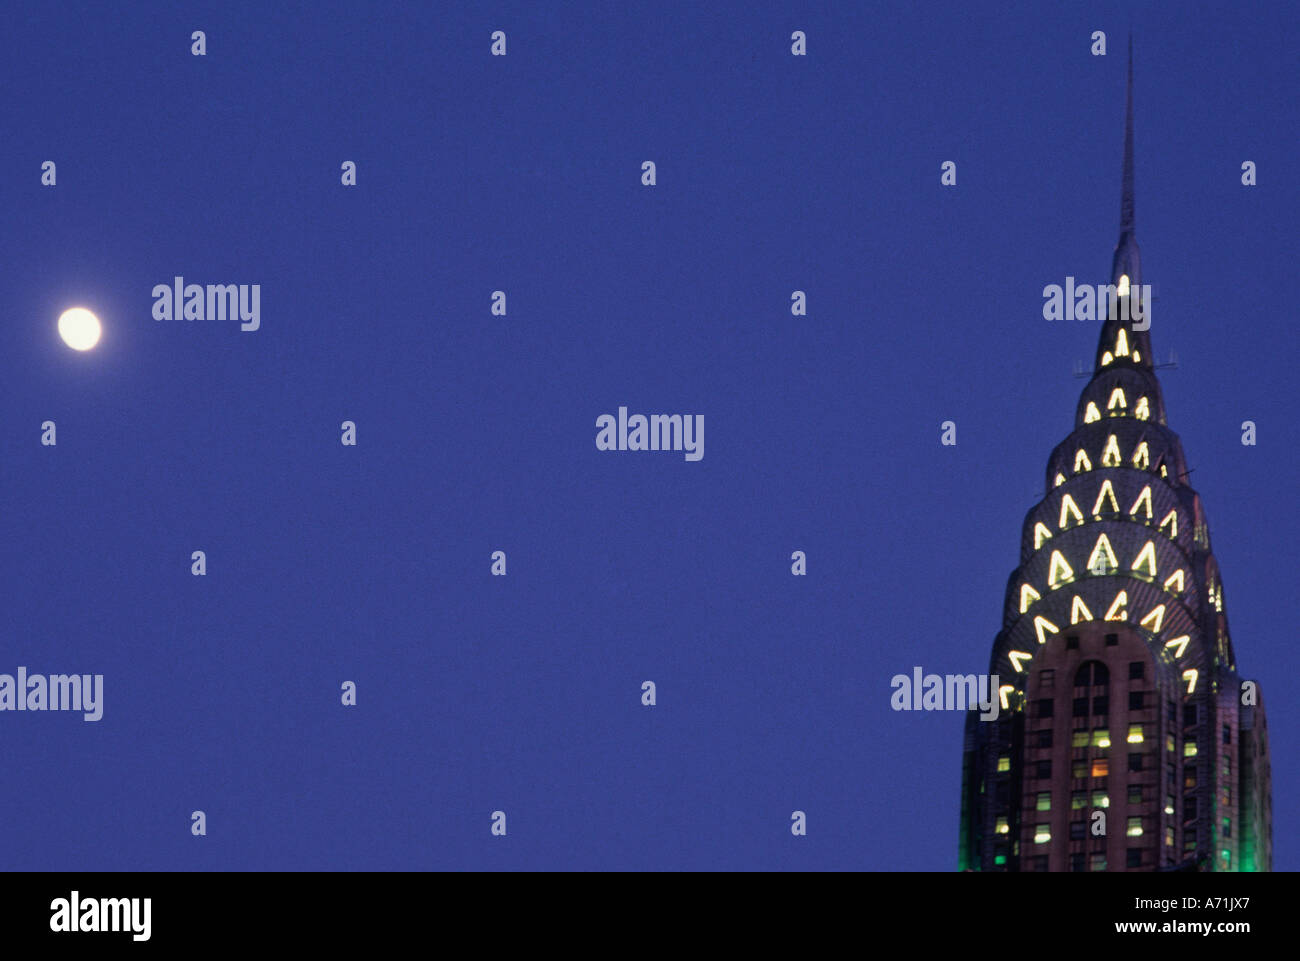 Le Chrysler Building, New York, Midtown Manhattan. Gratte-ciel historique art déco emblématique illuminé la nuit sous une pleine lune. New York City Landmark. Banque D'Images